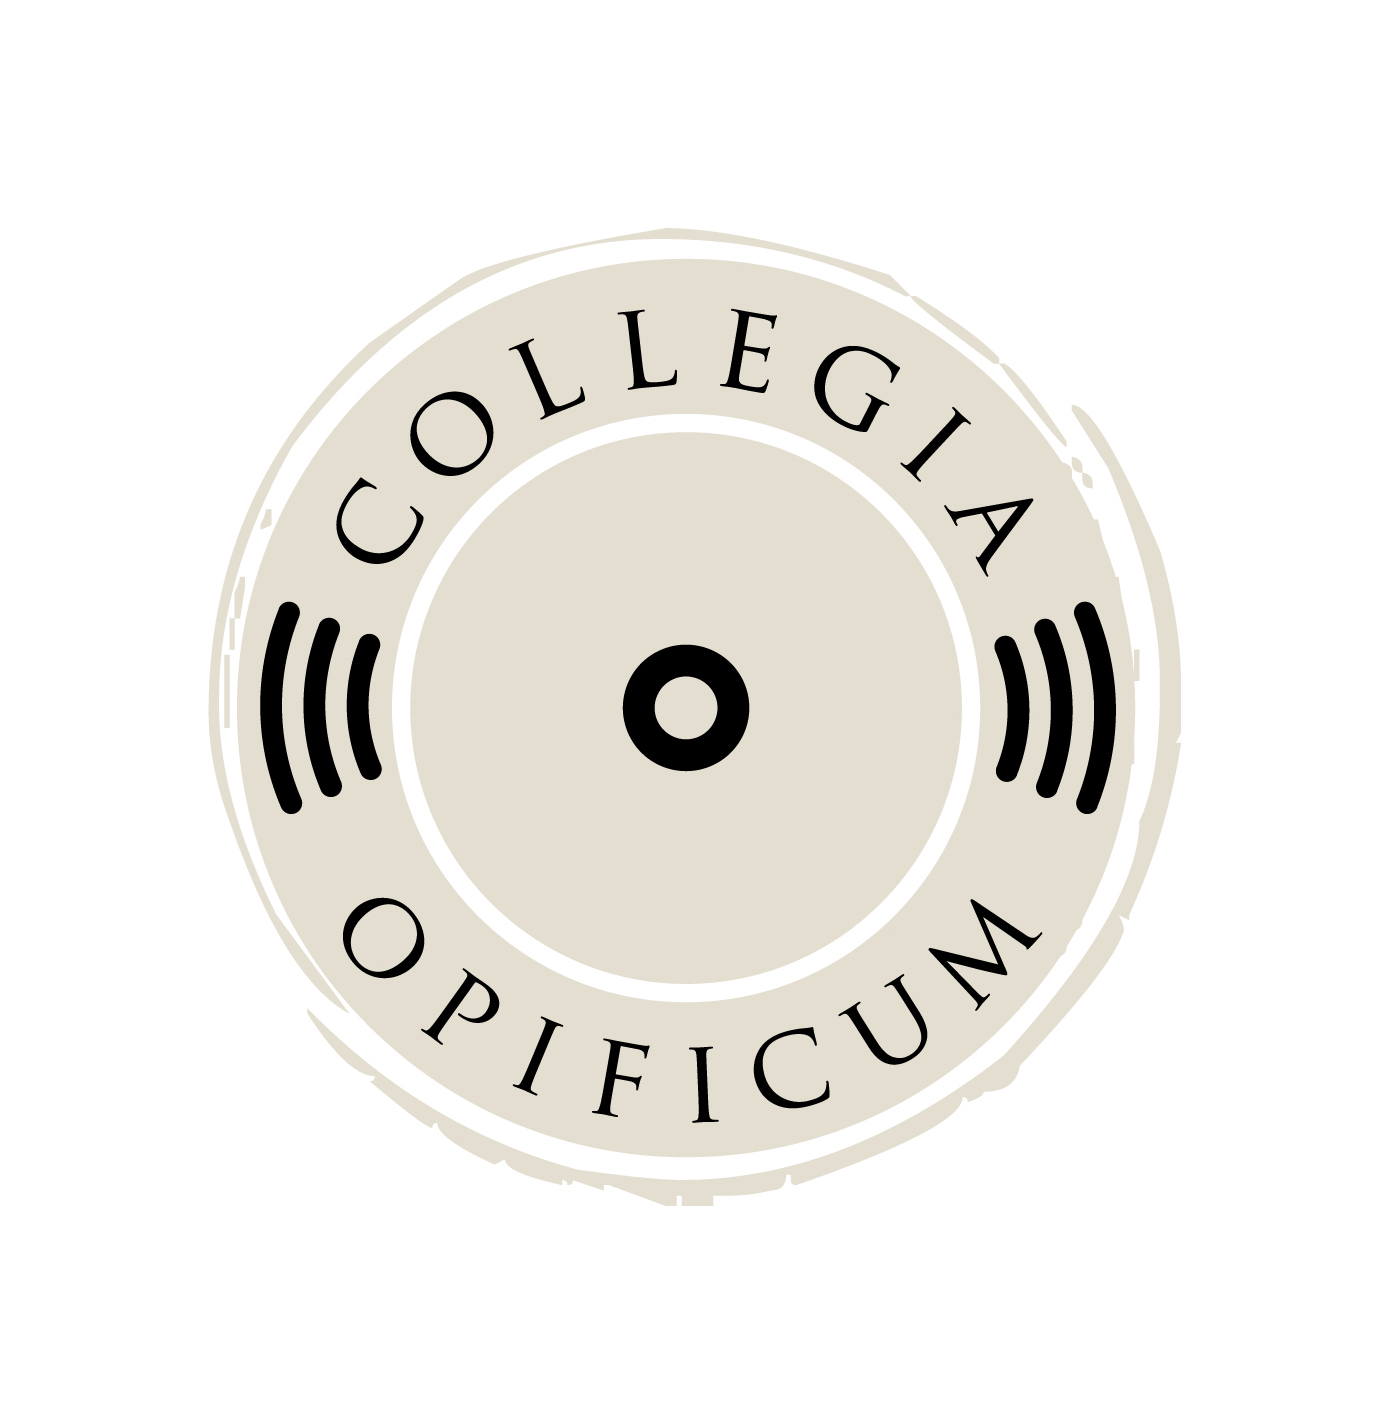 Collegia Opificum Store